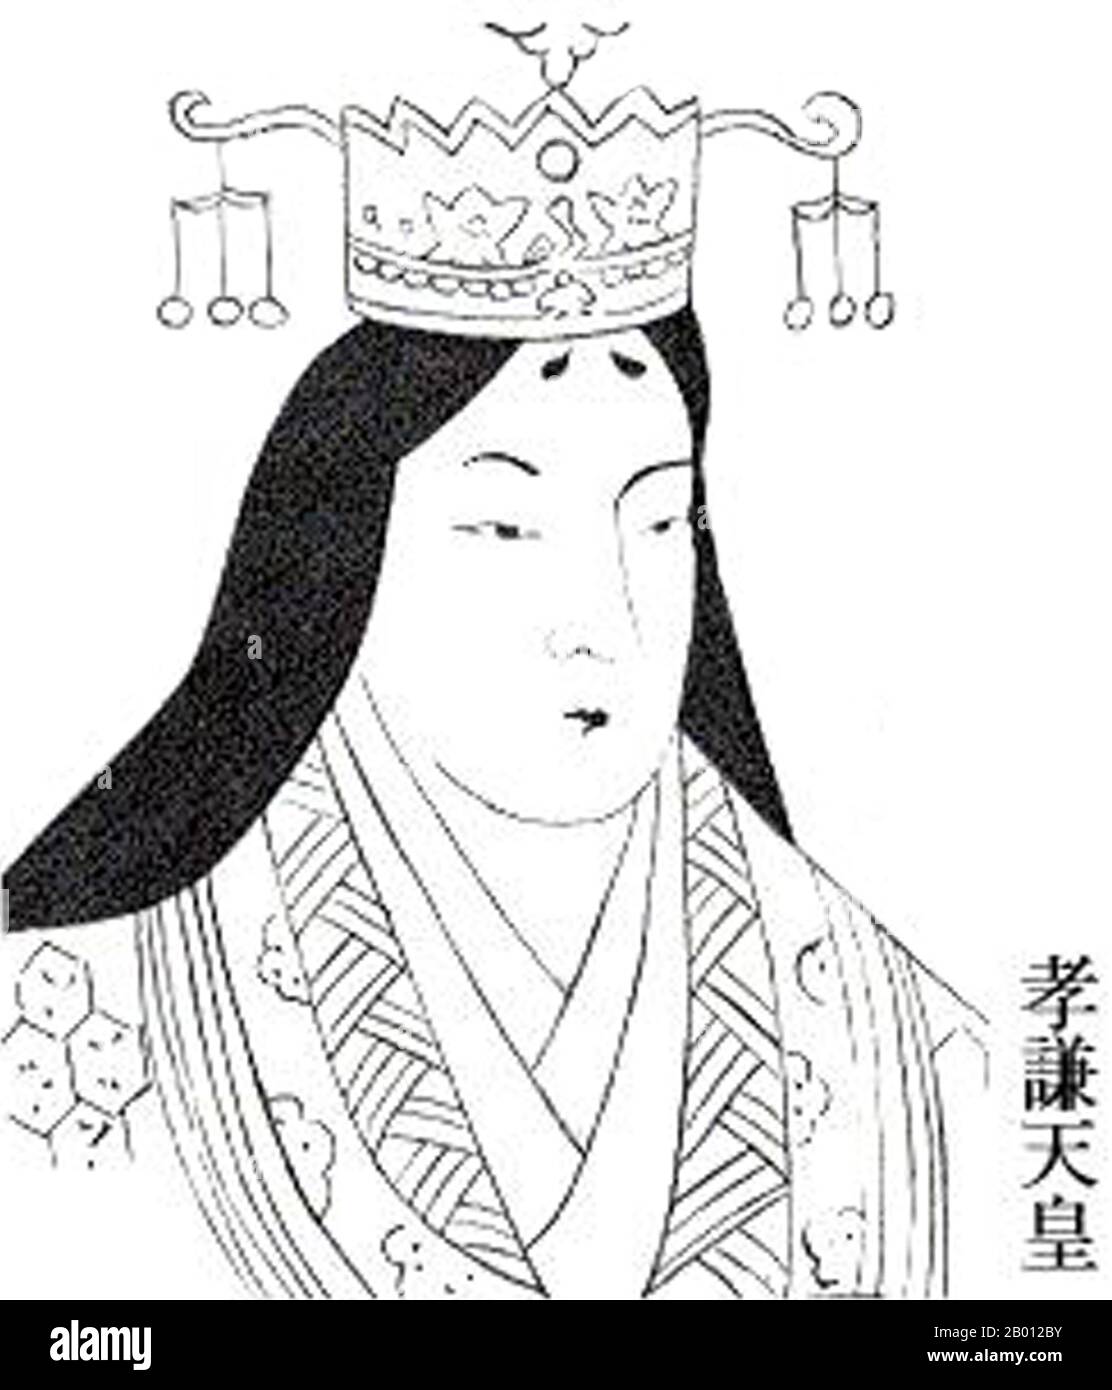 Giappone: Imperatrice Koken (718-770), conosciuta anche come imperatrice Shotoku, 46a e 48a reggente imperiale del Giappone. Ritratto, VIII secolo. Imperatrice Koken (718-770), nota anche come imperatrice Shotoku, 46a (come Imperatrice Koken) e 48a (come Imperatrice Shotoku), dominatore imperiale del Giappone. Il regno dell'imperatrice Shotoku era estremamente turbolento, e sopravvisse ai tentativi di colpo di stato di Tachibana Naramaro e Fujiwara no Nakamaro. Oggi è ricordata principalmente per il suo rapporto con un monaco buddista di nome Dokyo. Questa imperatrice è tradizionalmente venerata in un memoriale santuario shinto (misasagi) a Nara. Foto Stock